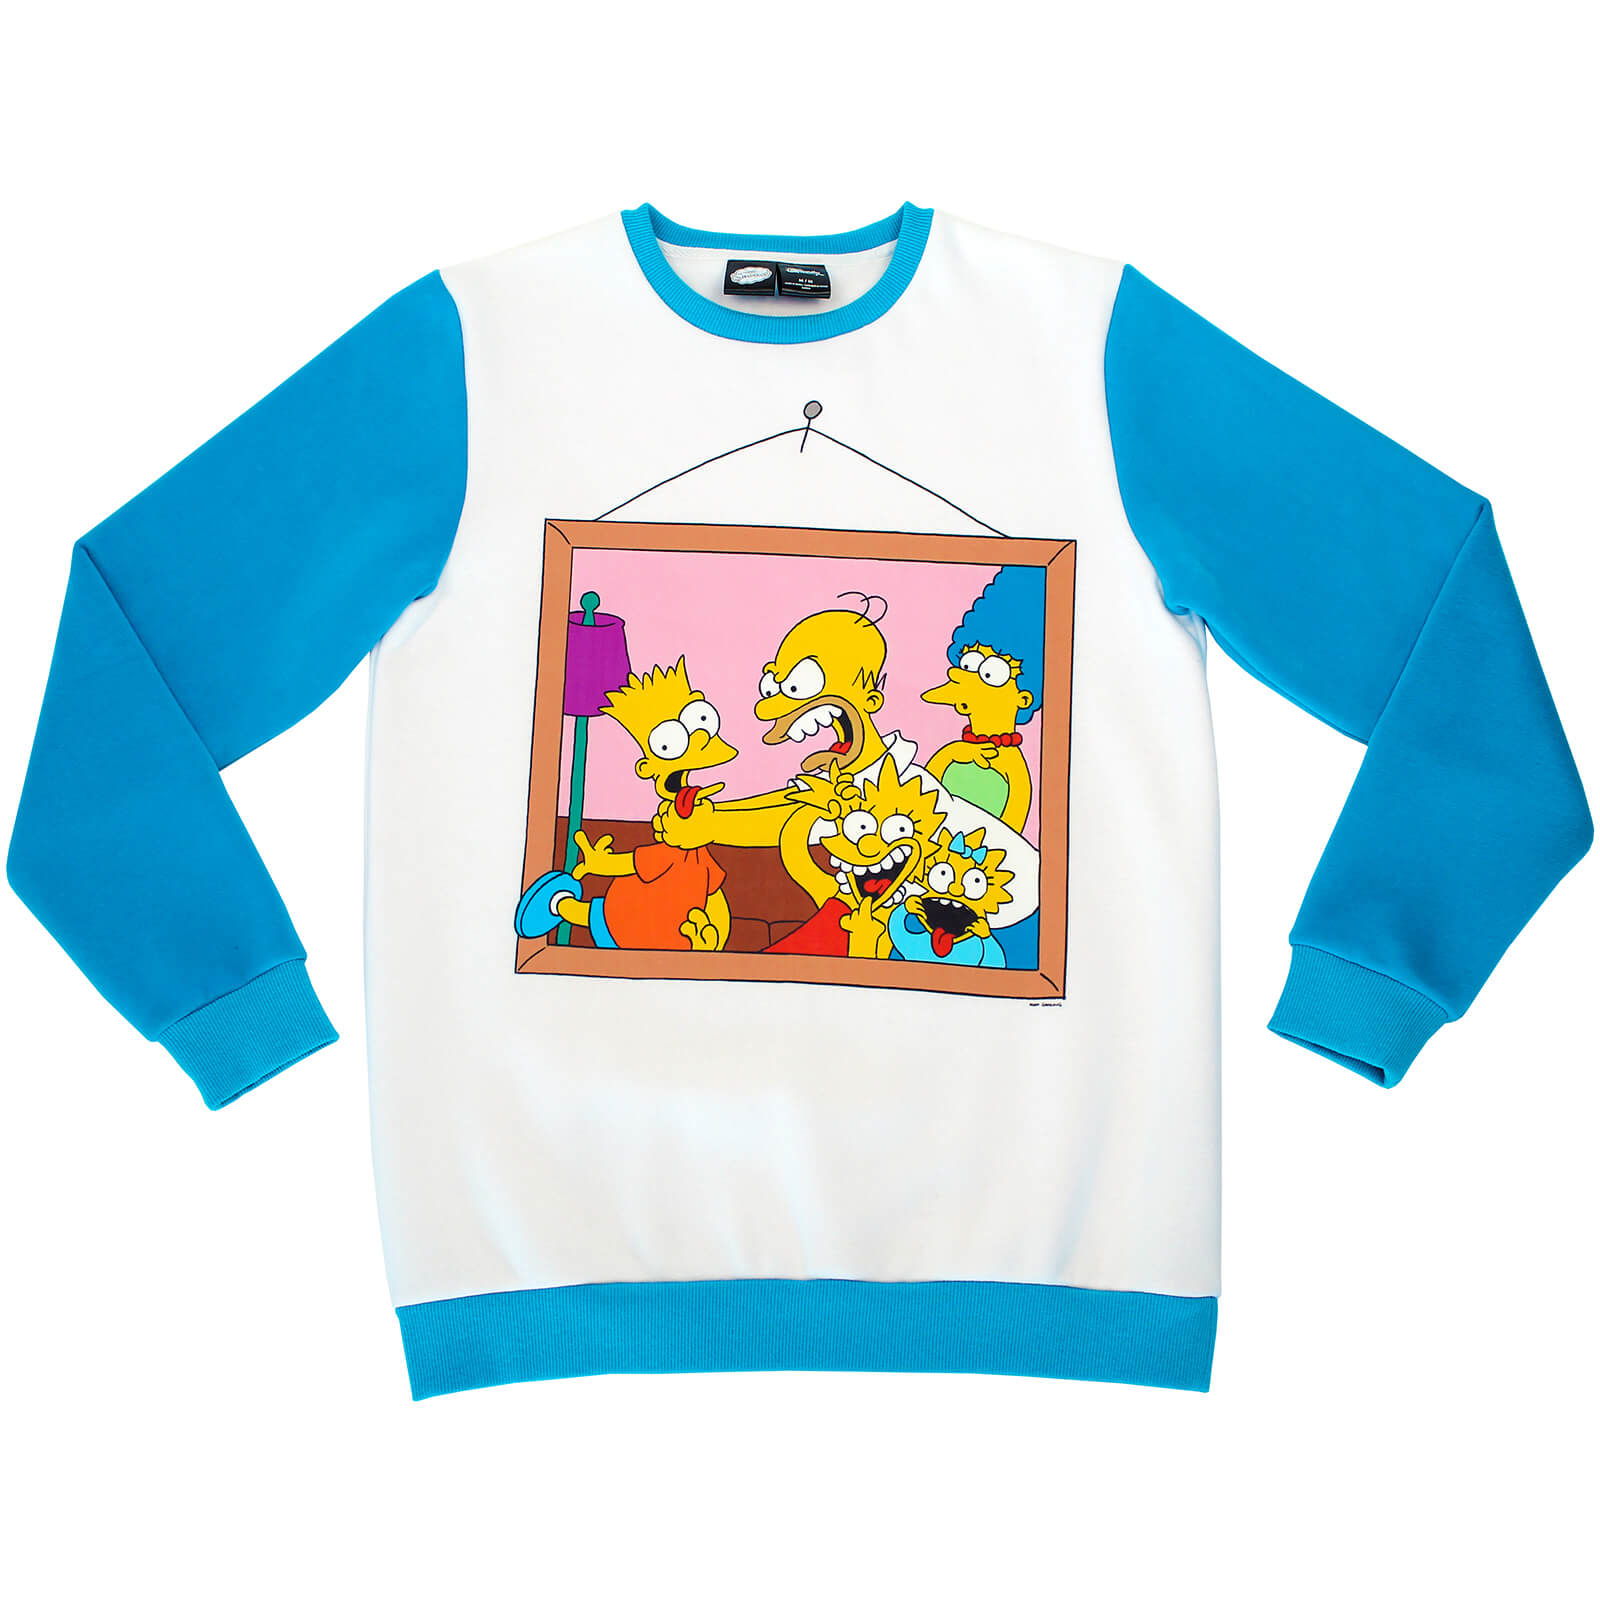 Cakeworthy x The Simpsons - Retro Crewneck Sweater - S